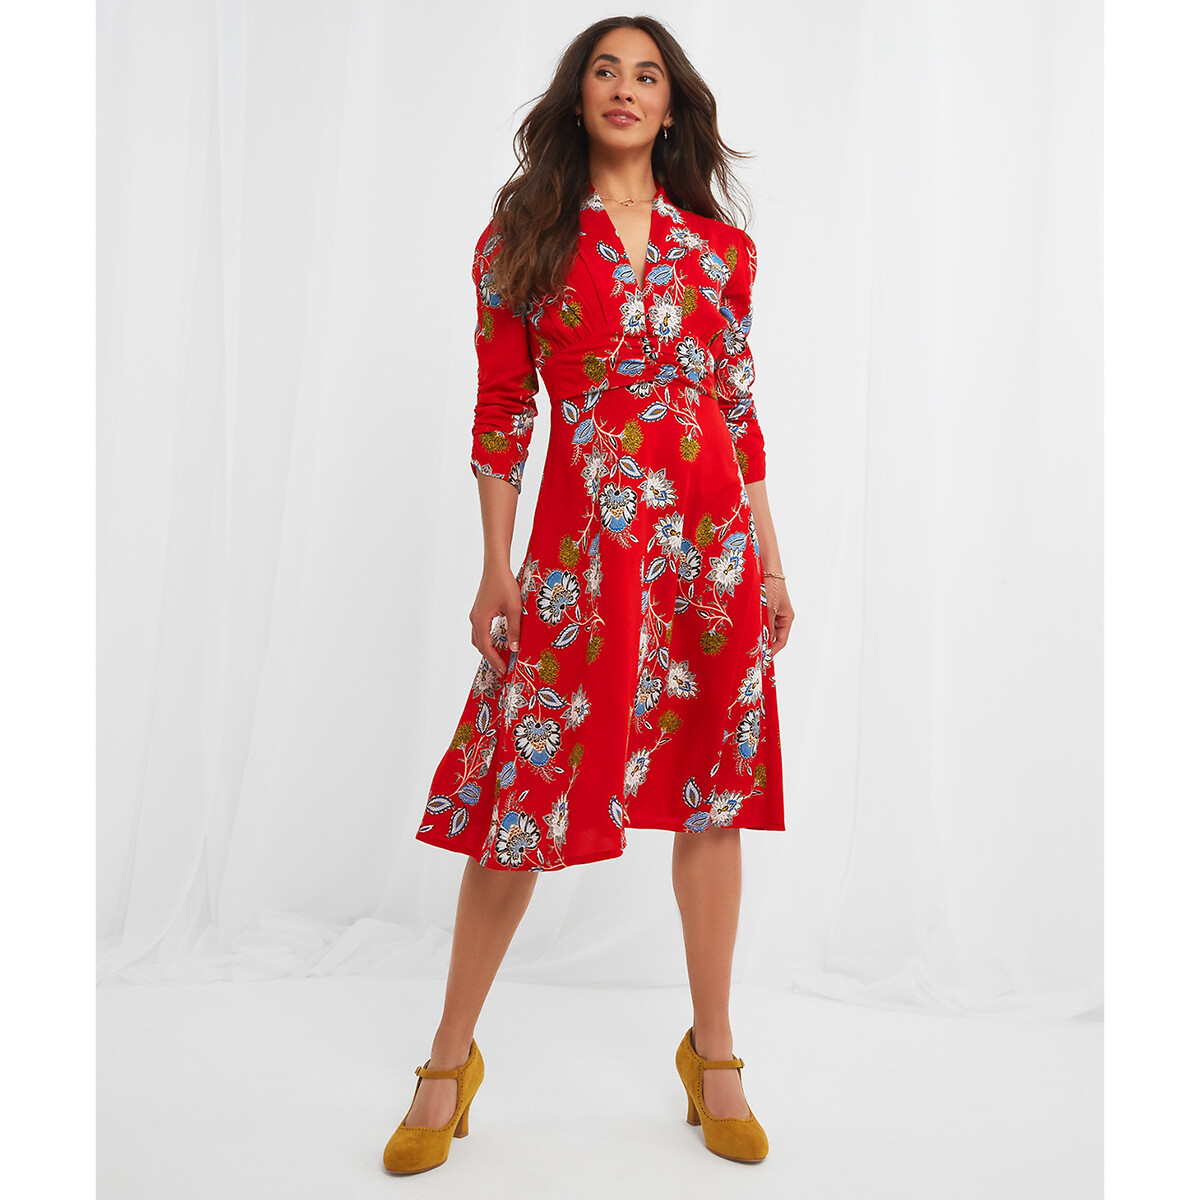 Платье JOE BROWNS Платье С V-образным вырезом цветочный принт 44 красный, размер 44 - фото 1